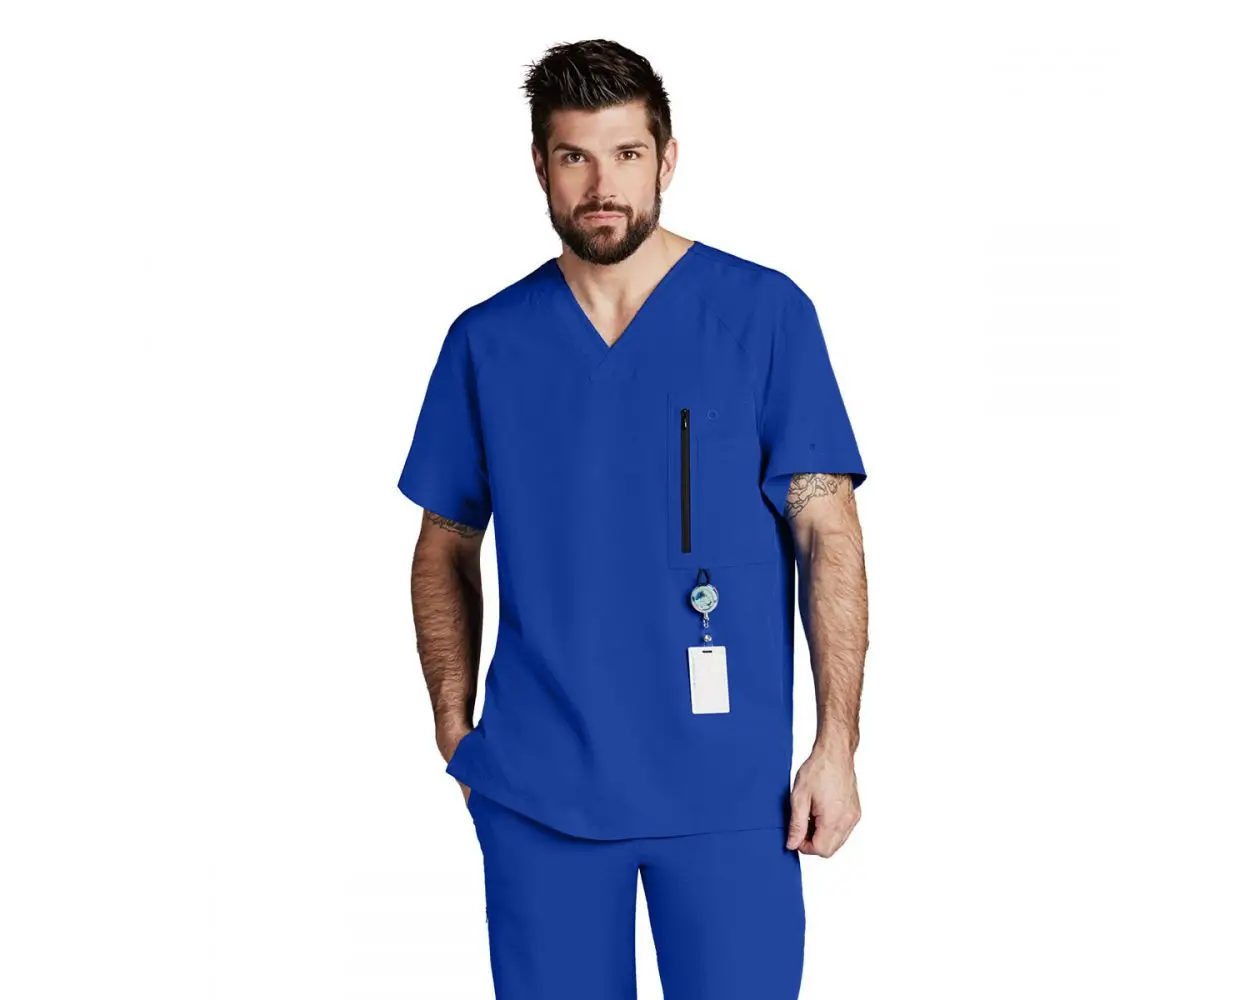 Uniforme dell'ospedale dell'abbigliamento medico dell'oem per l'abbigliamento ospedaliero degli uomini dei medici